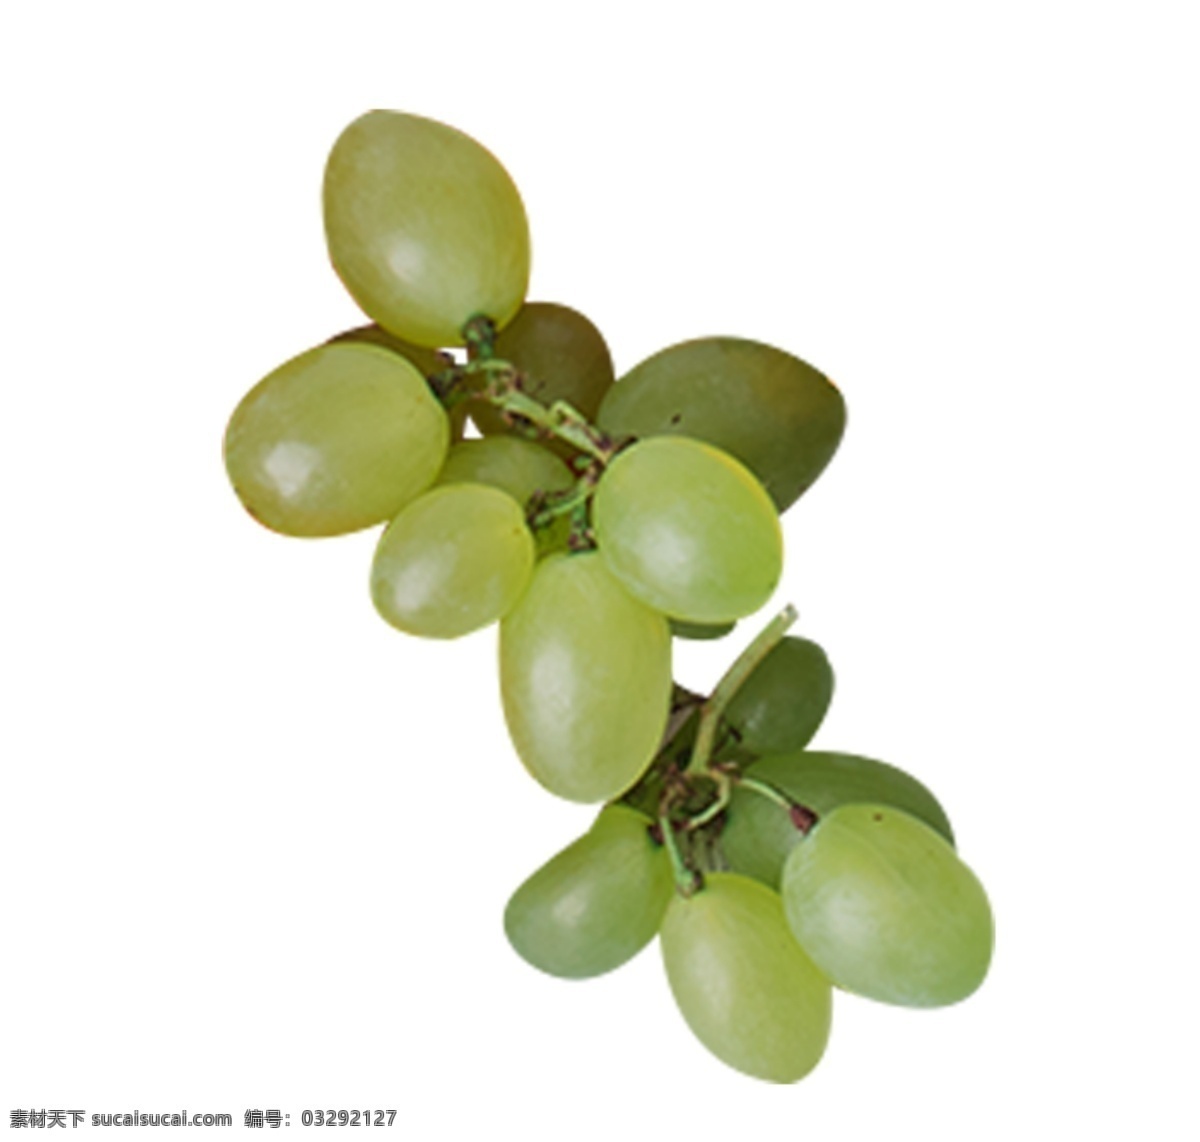 绿色葡萄一串 青葡萄 水果 食物